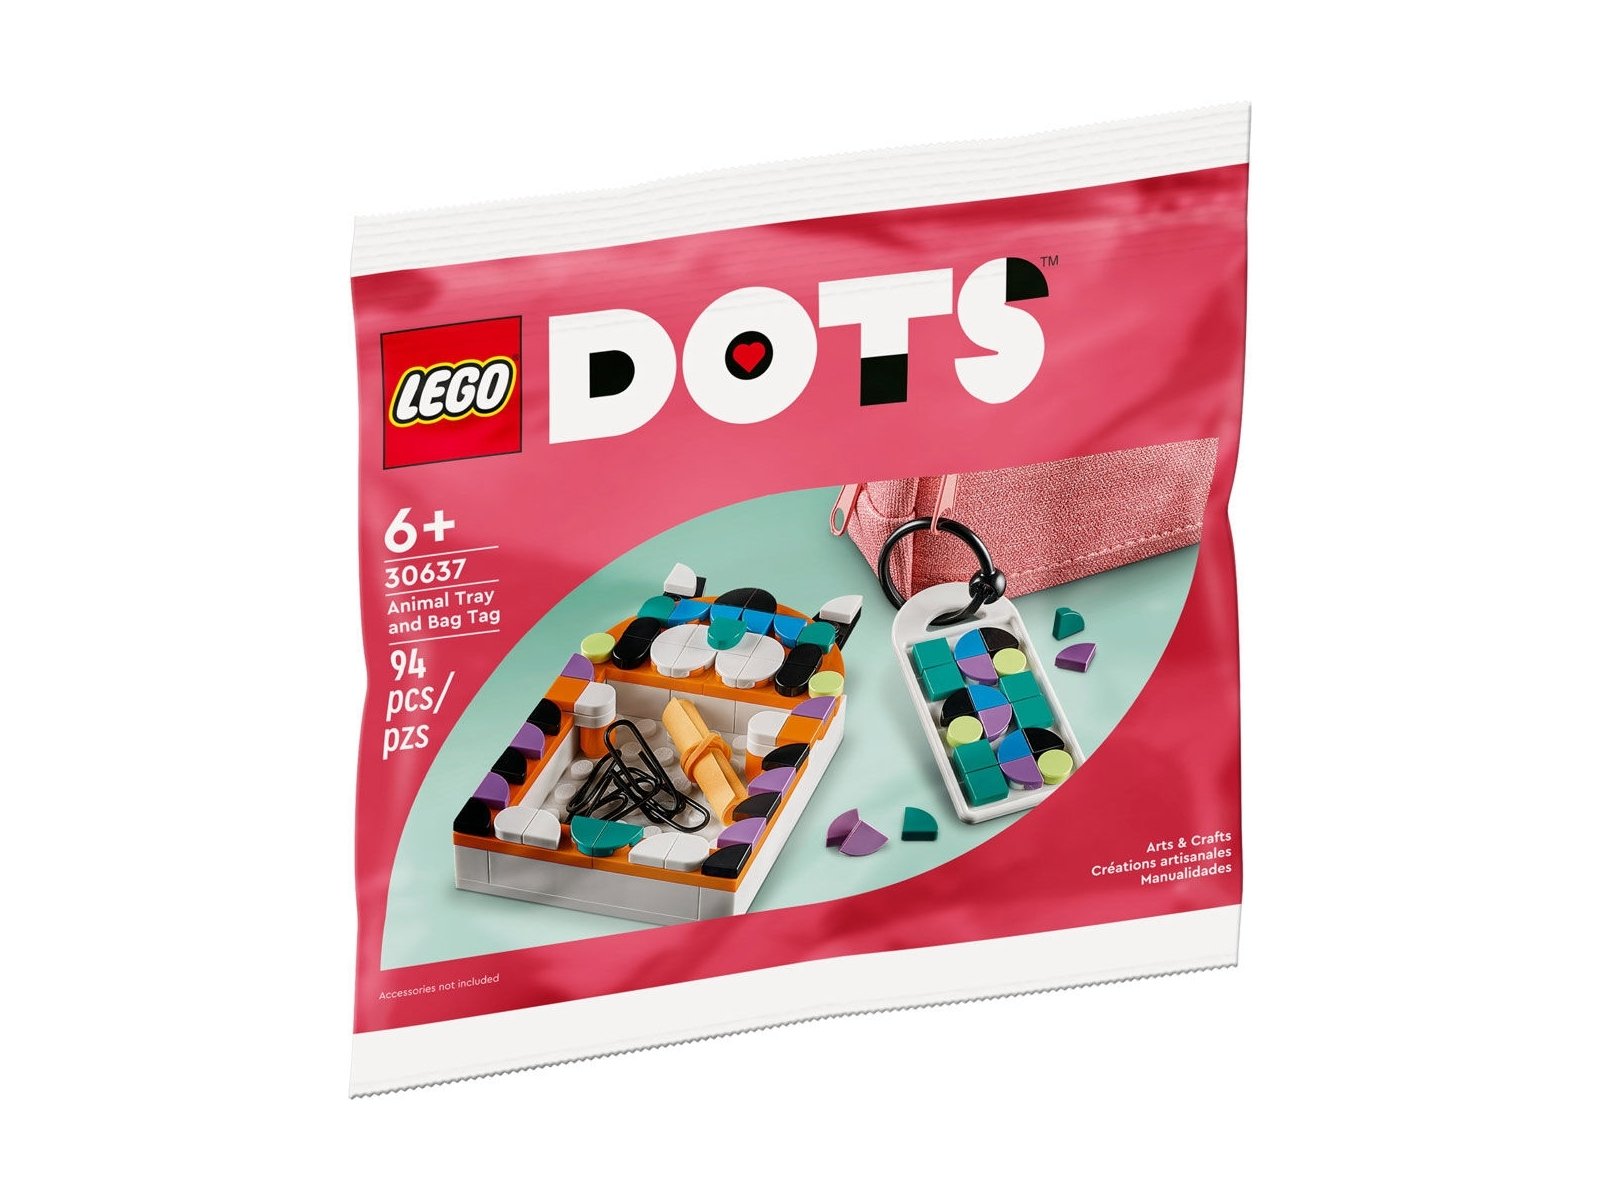 LEGO 30637 DOTS Tacka w kształcie zwierzaka i zawieszka na torbę